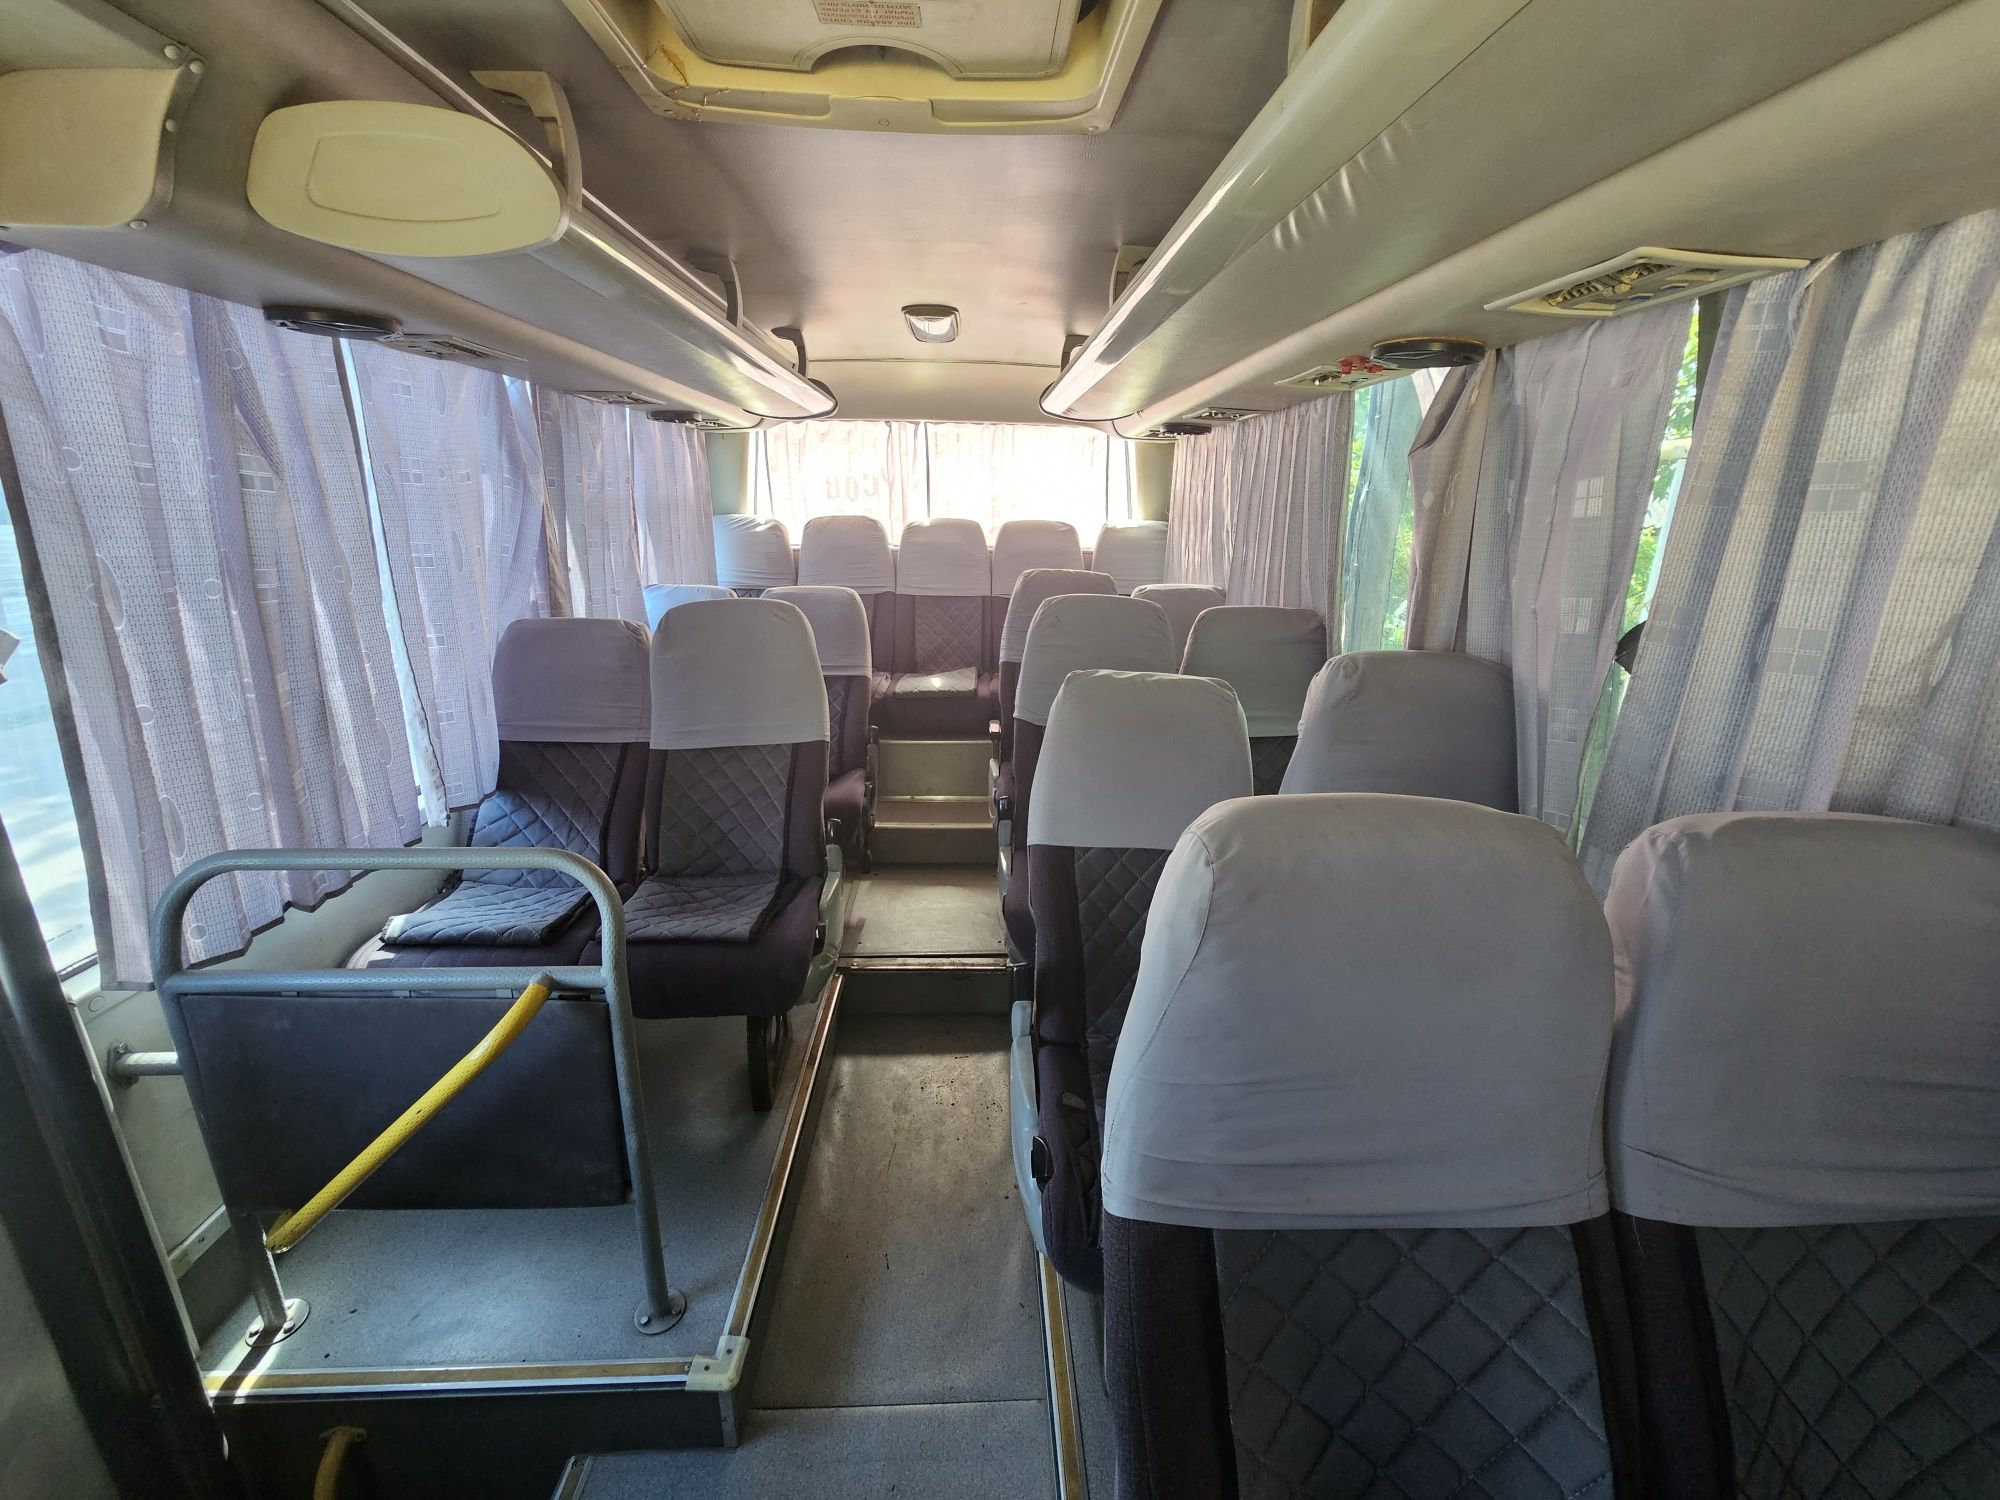 Автобус до 30 место с кондиционером бронируем на поездки, трансфер